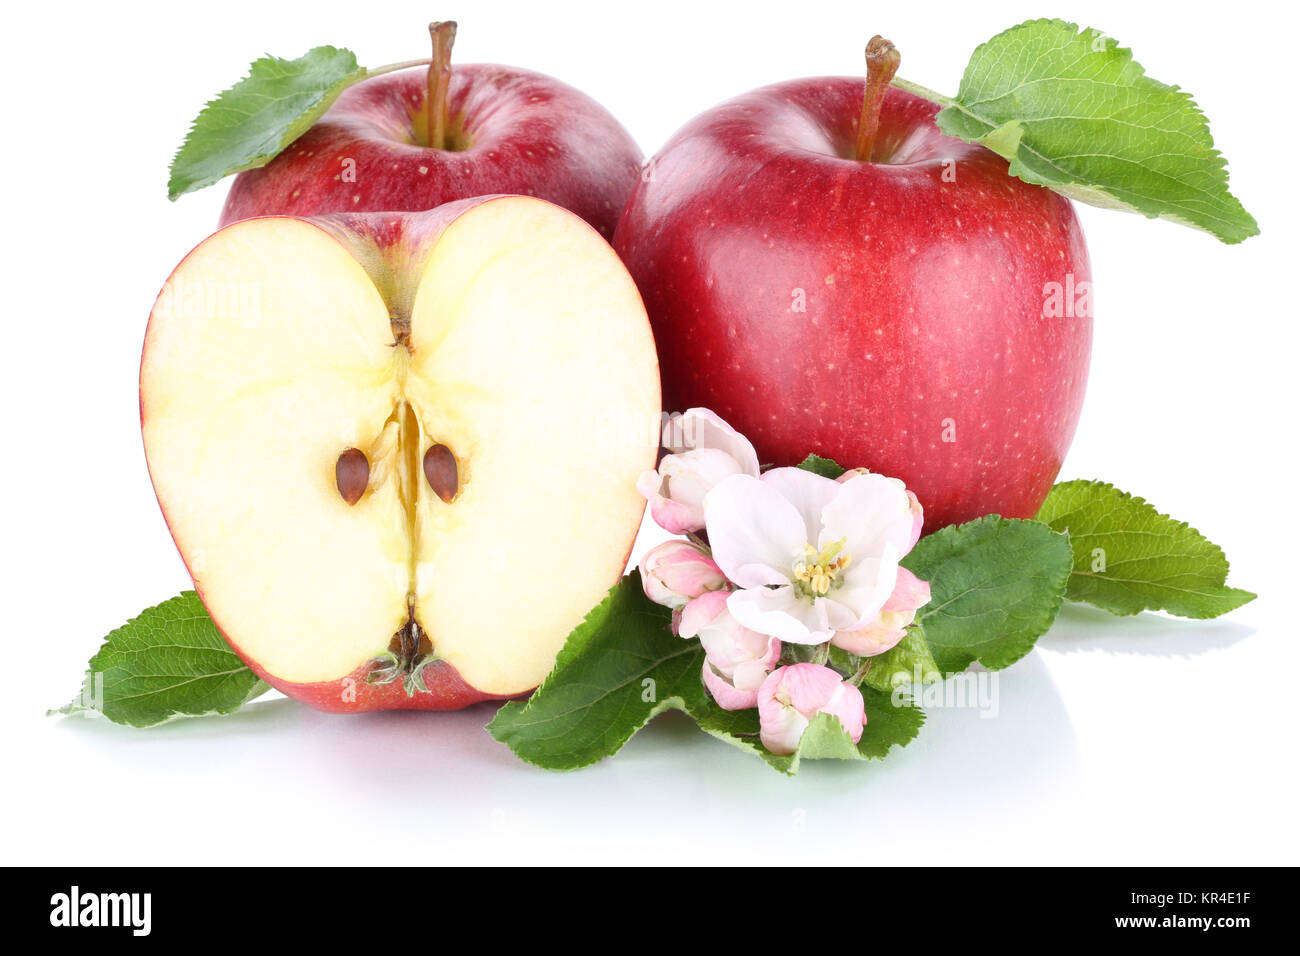 Apfel Äpfel rot Frucht frische Früchte Obst Freisteller freigestellt isoliert vor einem weissen Hintergrund Stock Photo